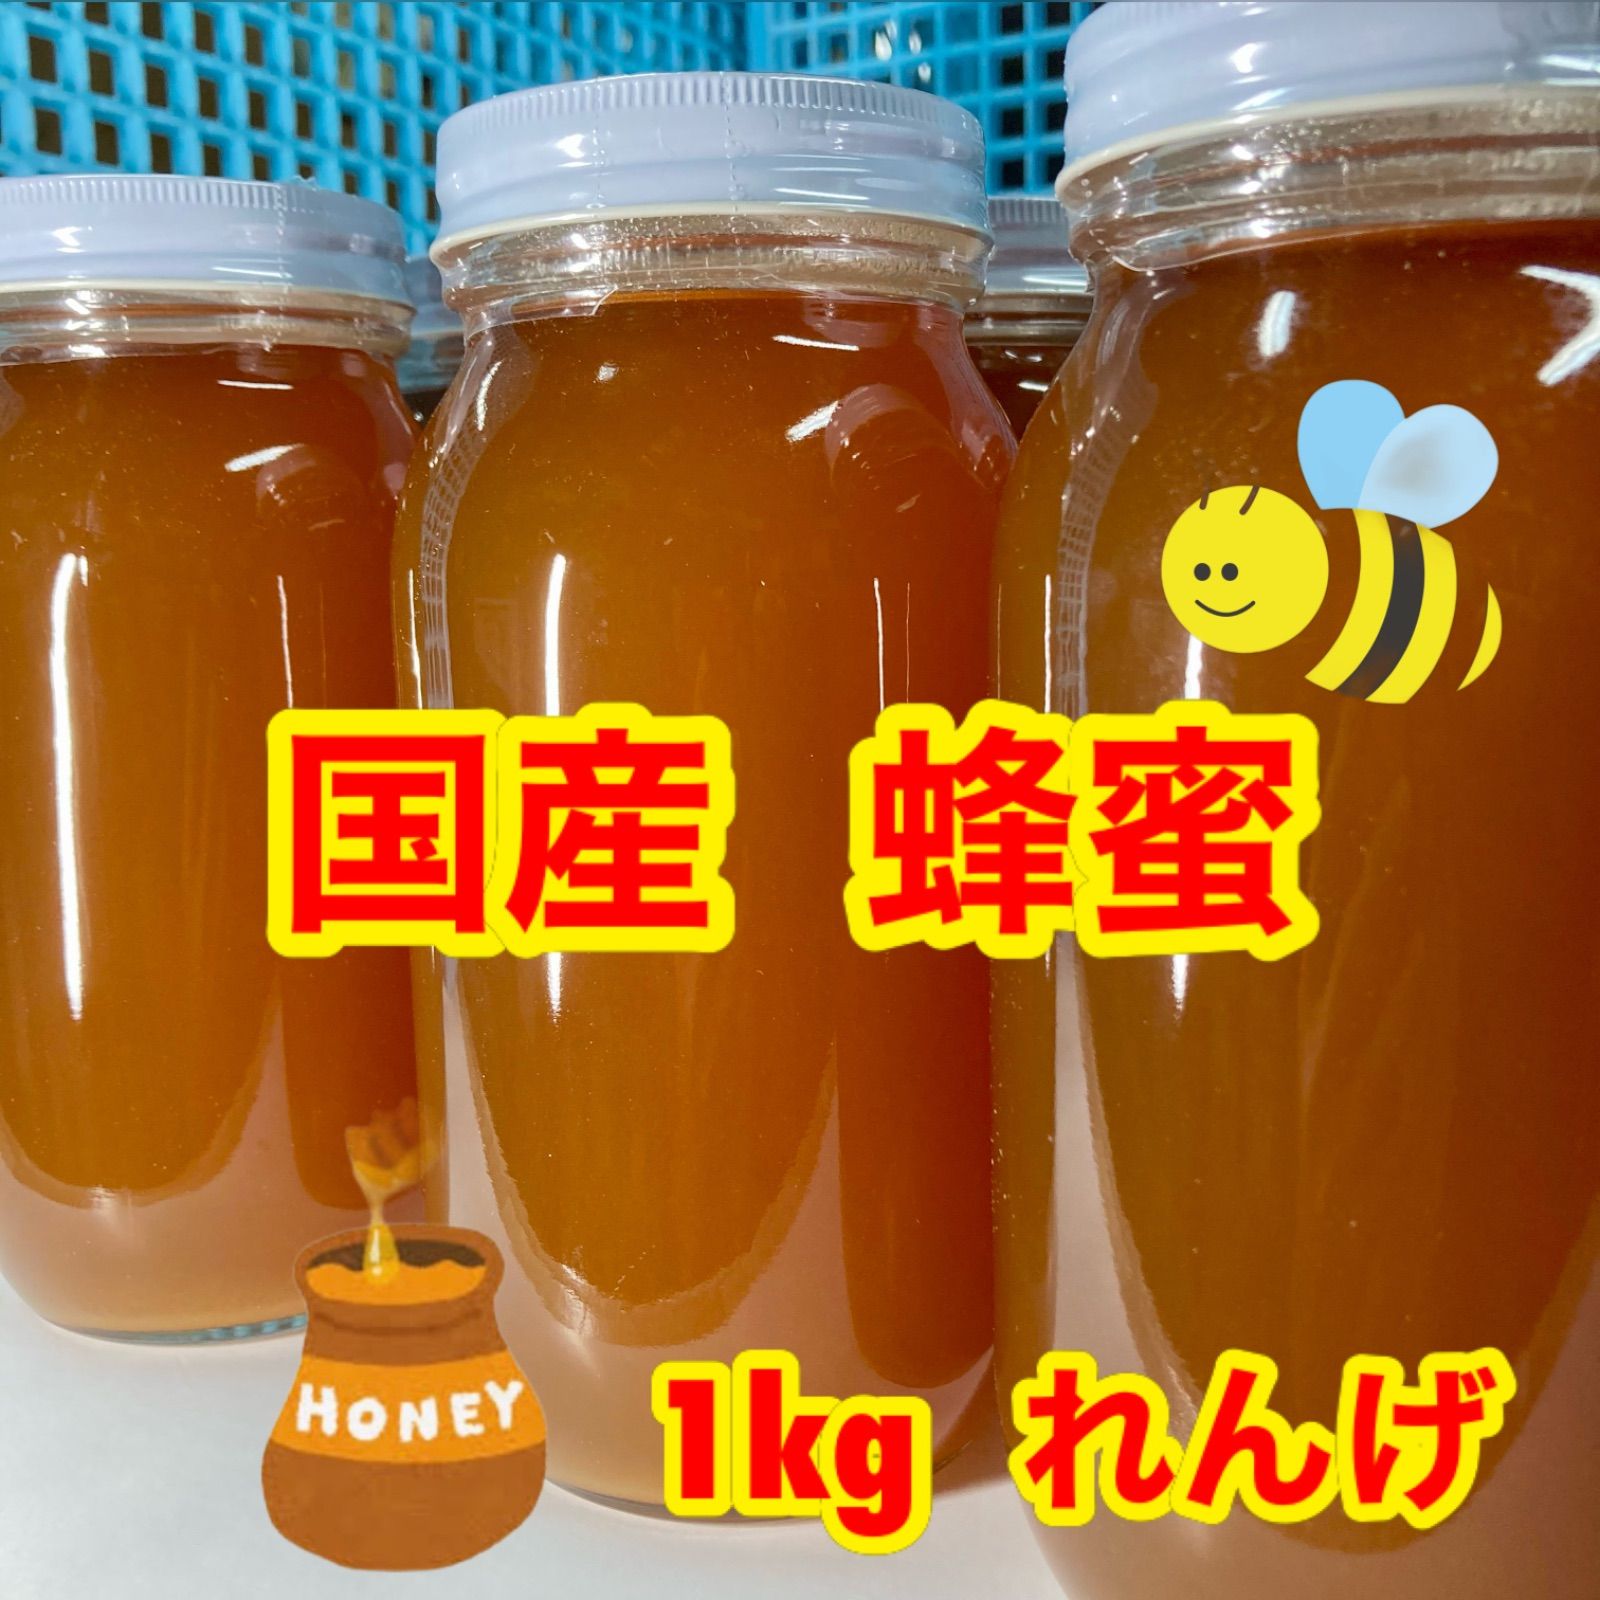 国産純粋れんげ蜂蜜1キロ | www.esn-ub.org